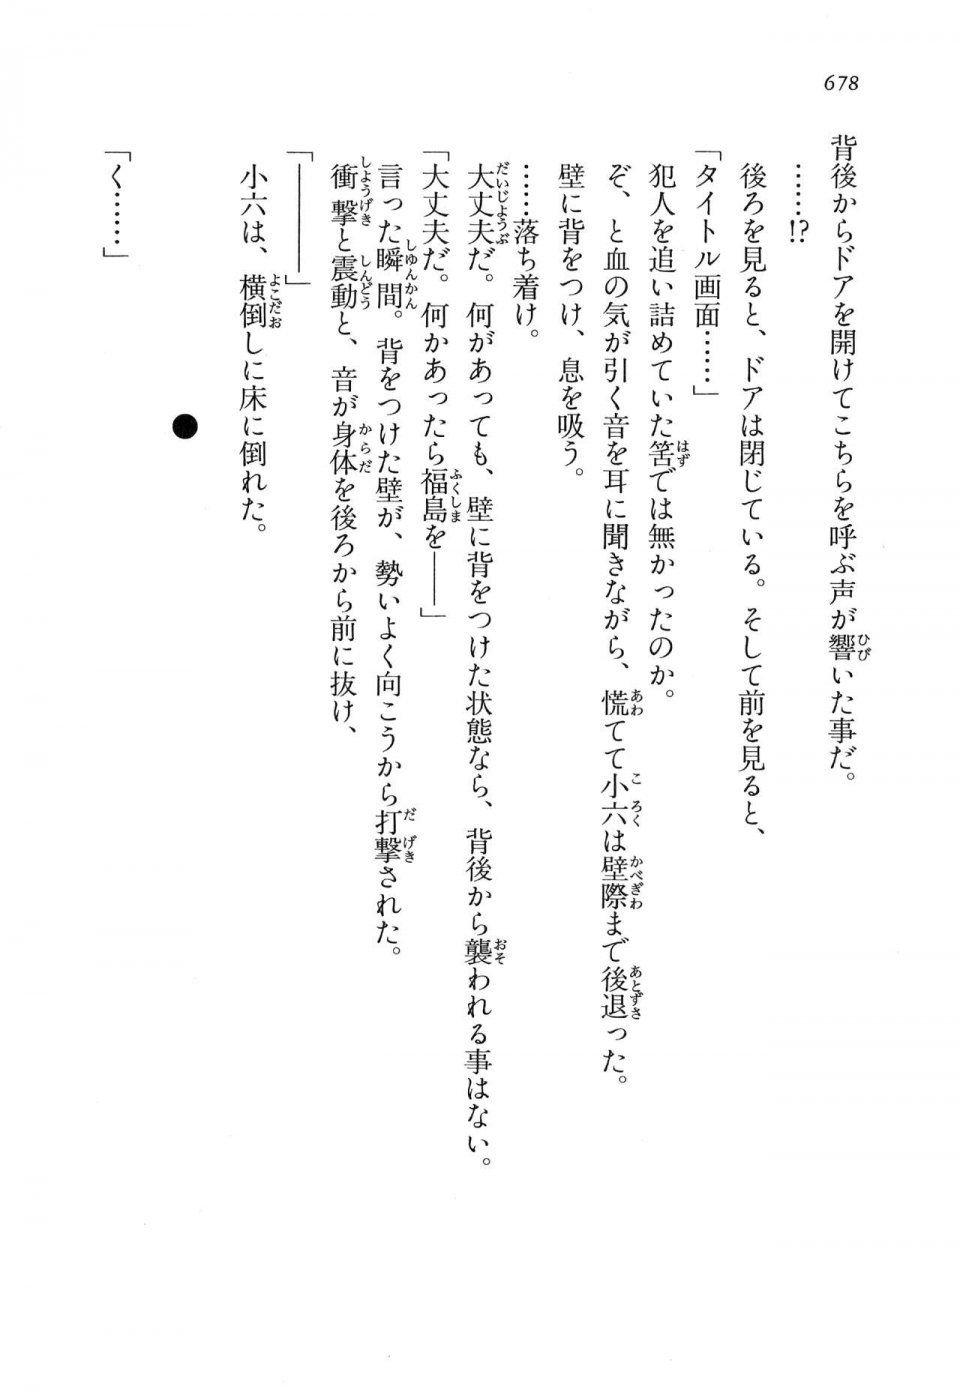 Kyoukai Senjou no Horizon LN Vol 16(7A) - Photo #678